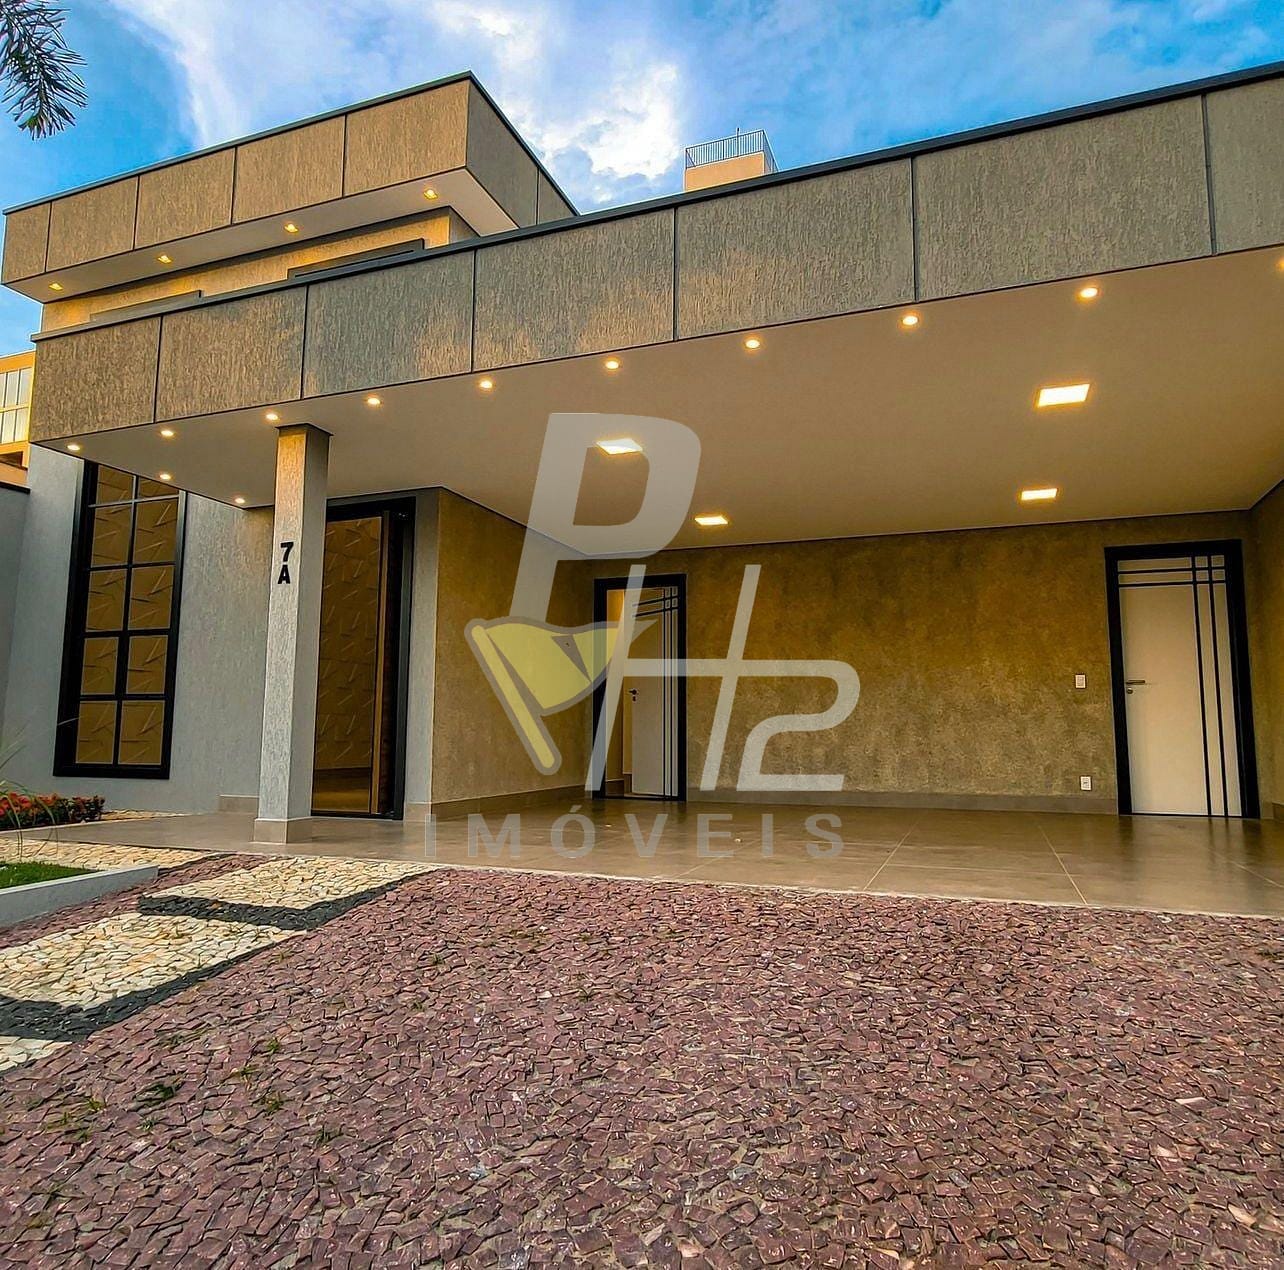 Casa em Setor Habitacional Vicente Pires (Taguatinga), Brasília/DF de 400m² 4 quartos à venda por R$ 1.498.900,00